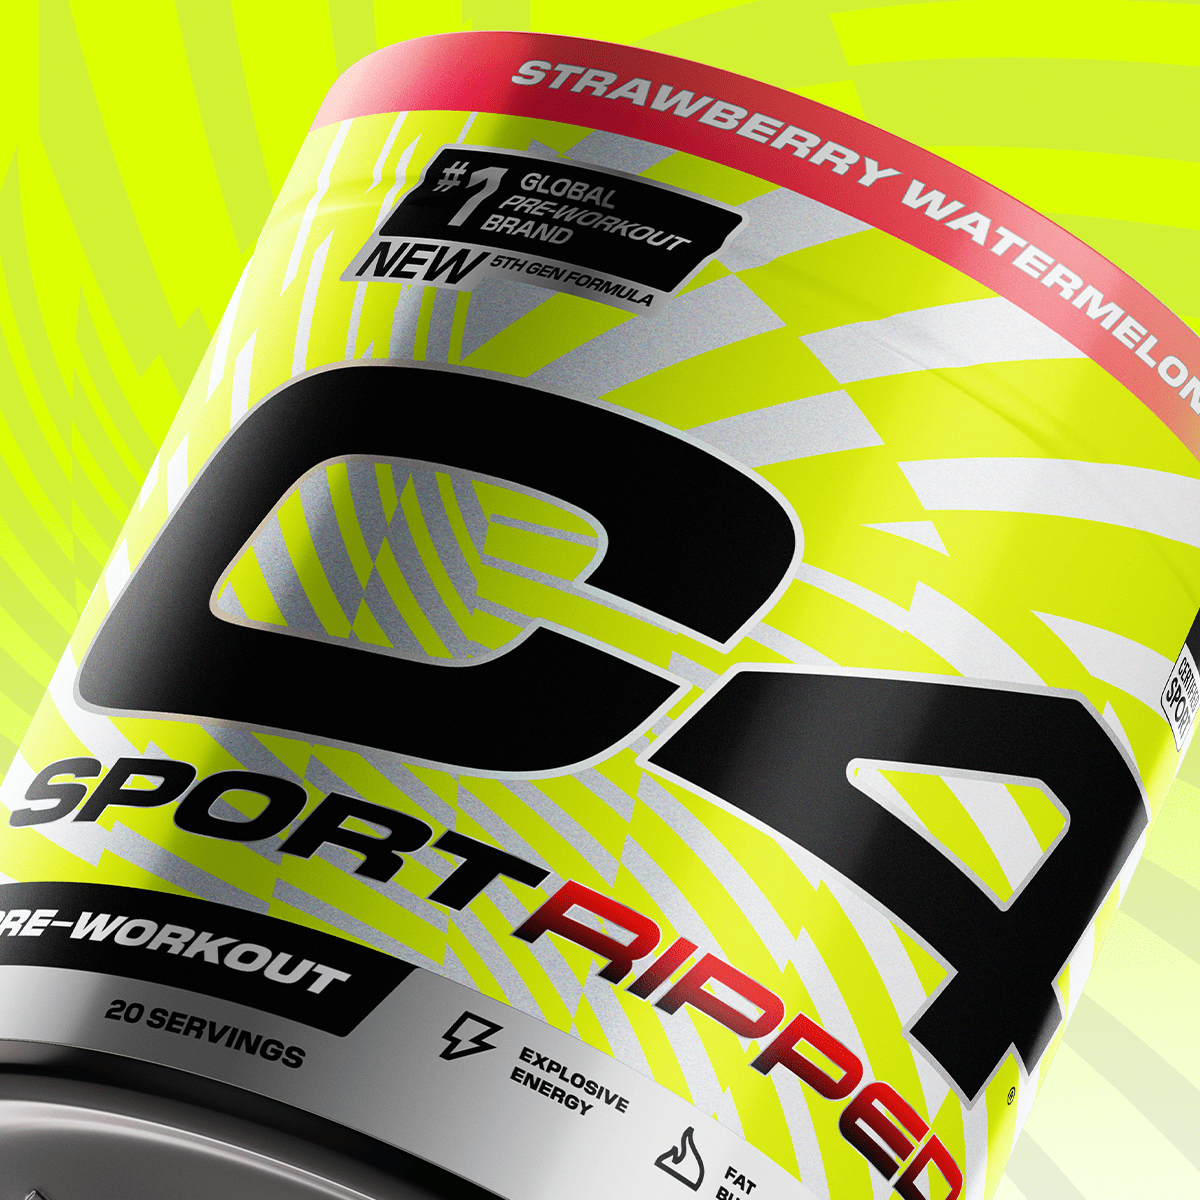 C4 Sport® Ripped Pre Workout Powder